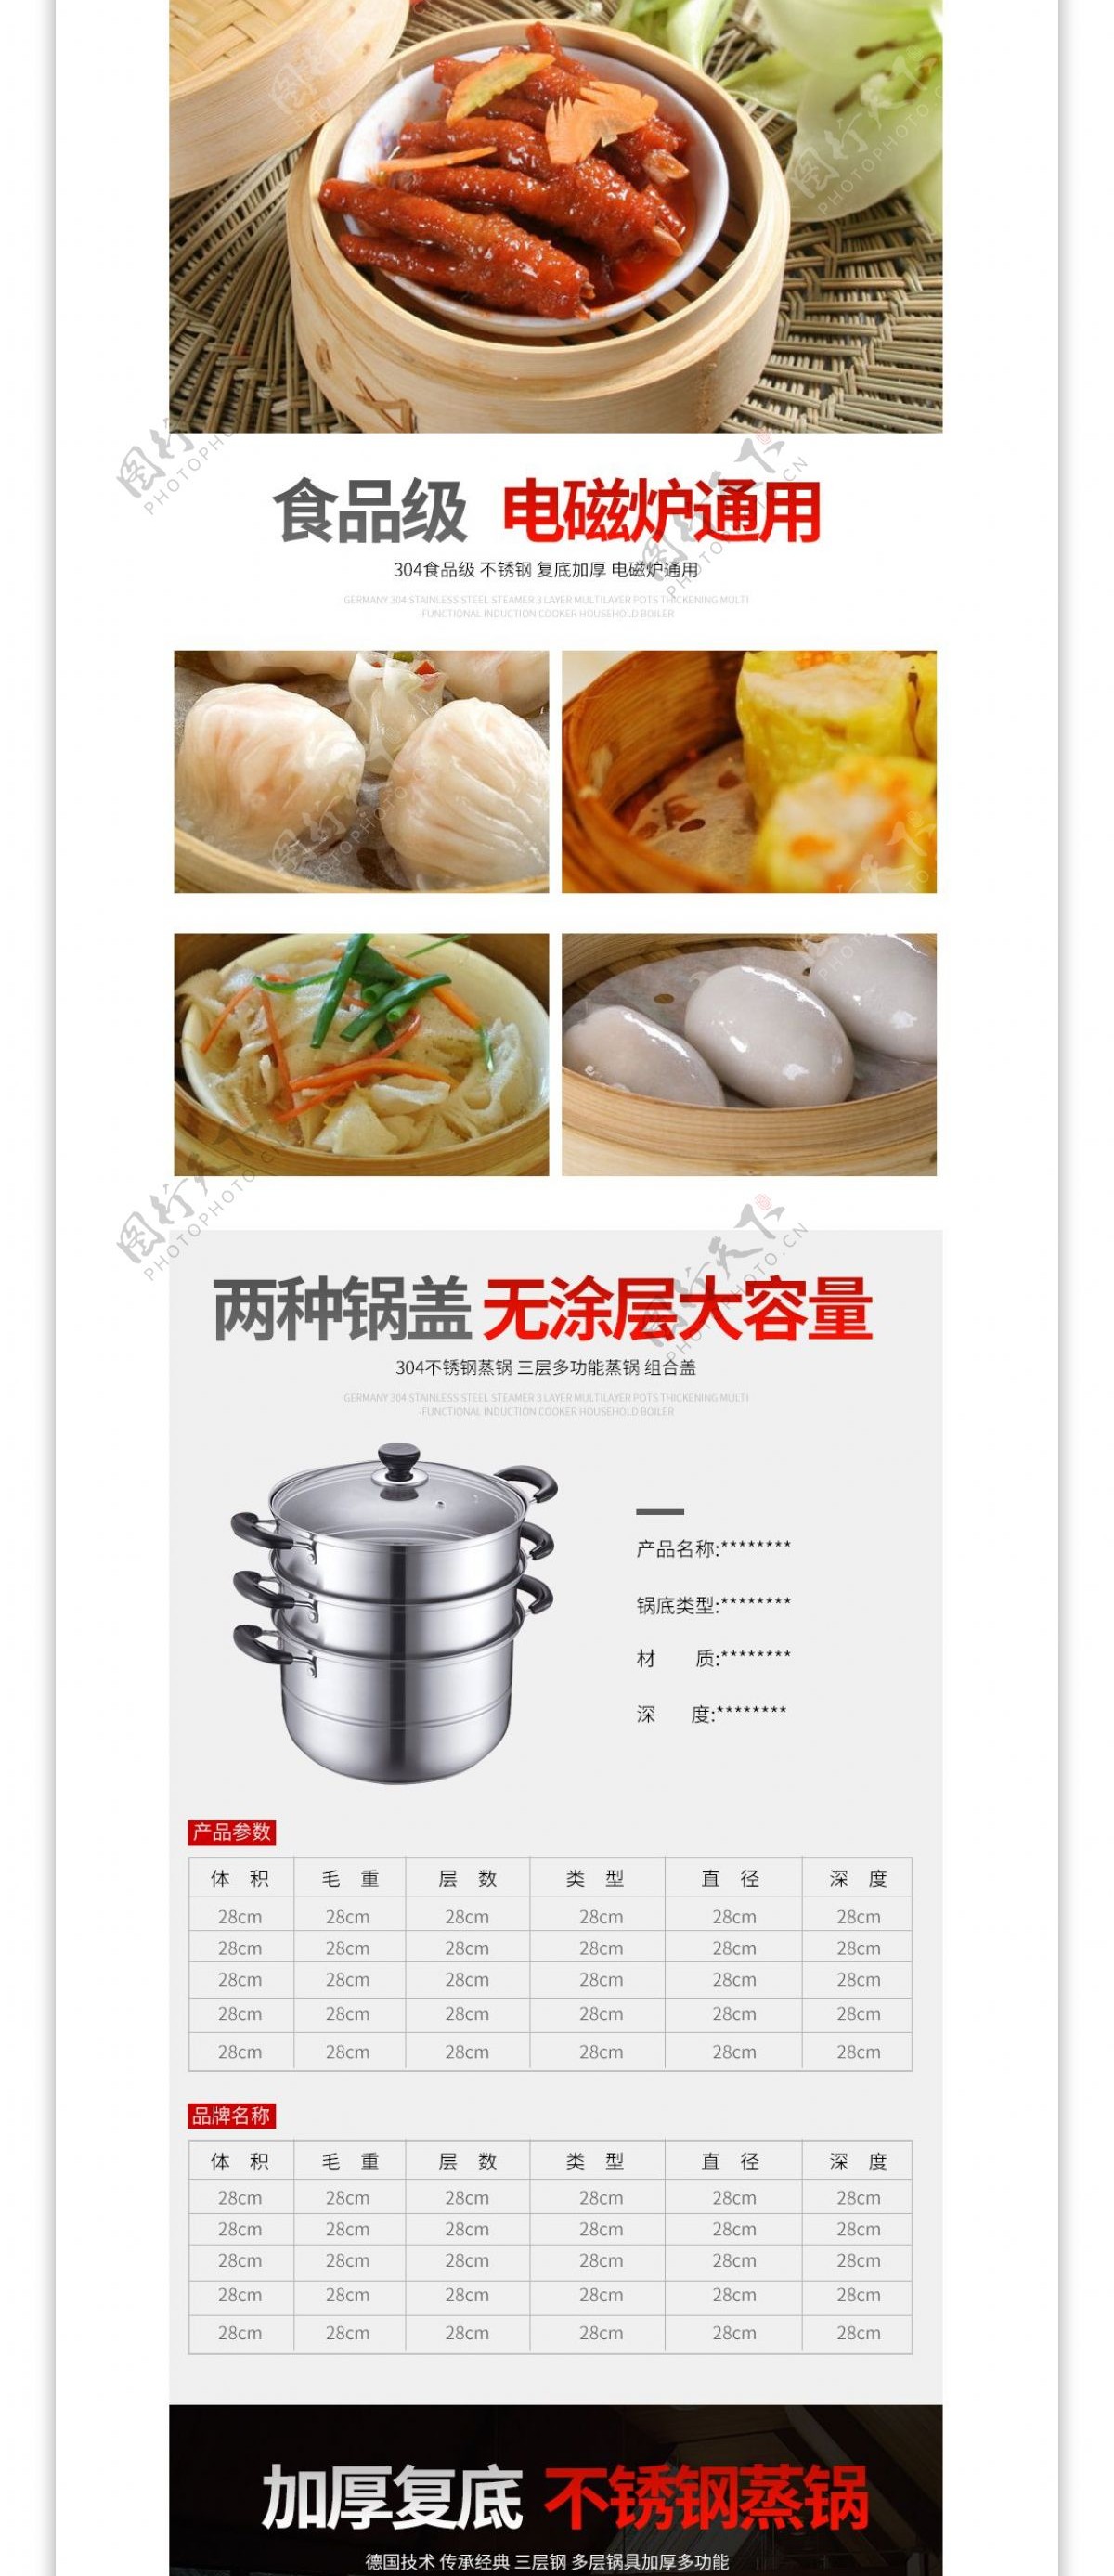 烹饪用具厨具详情页模板PSD